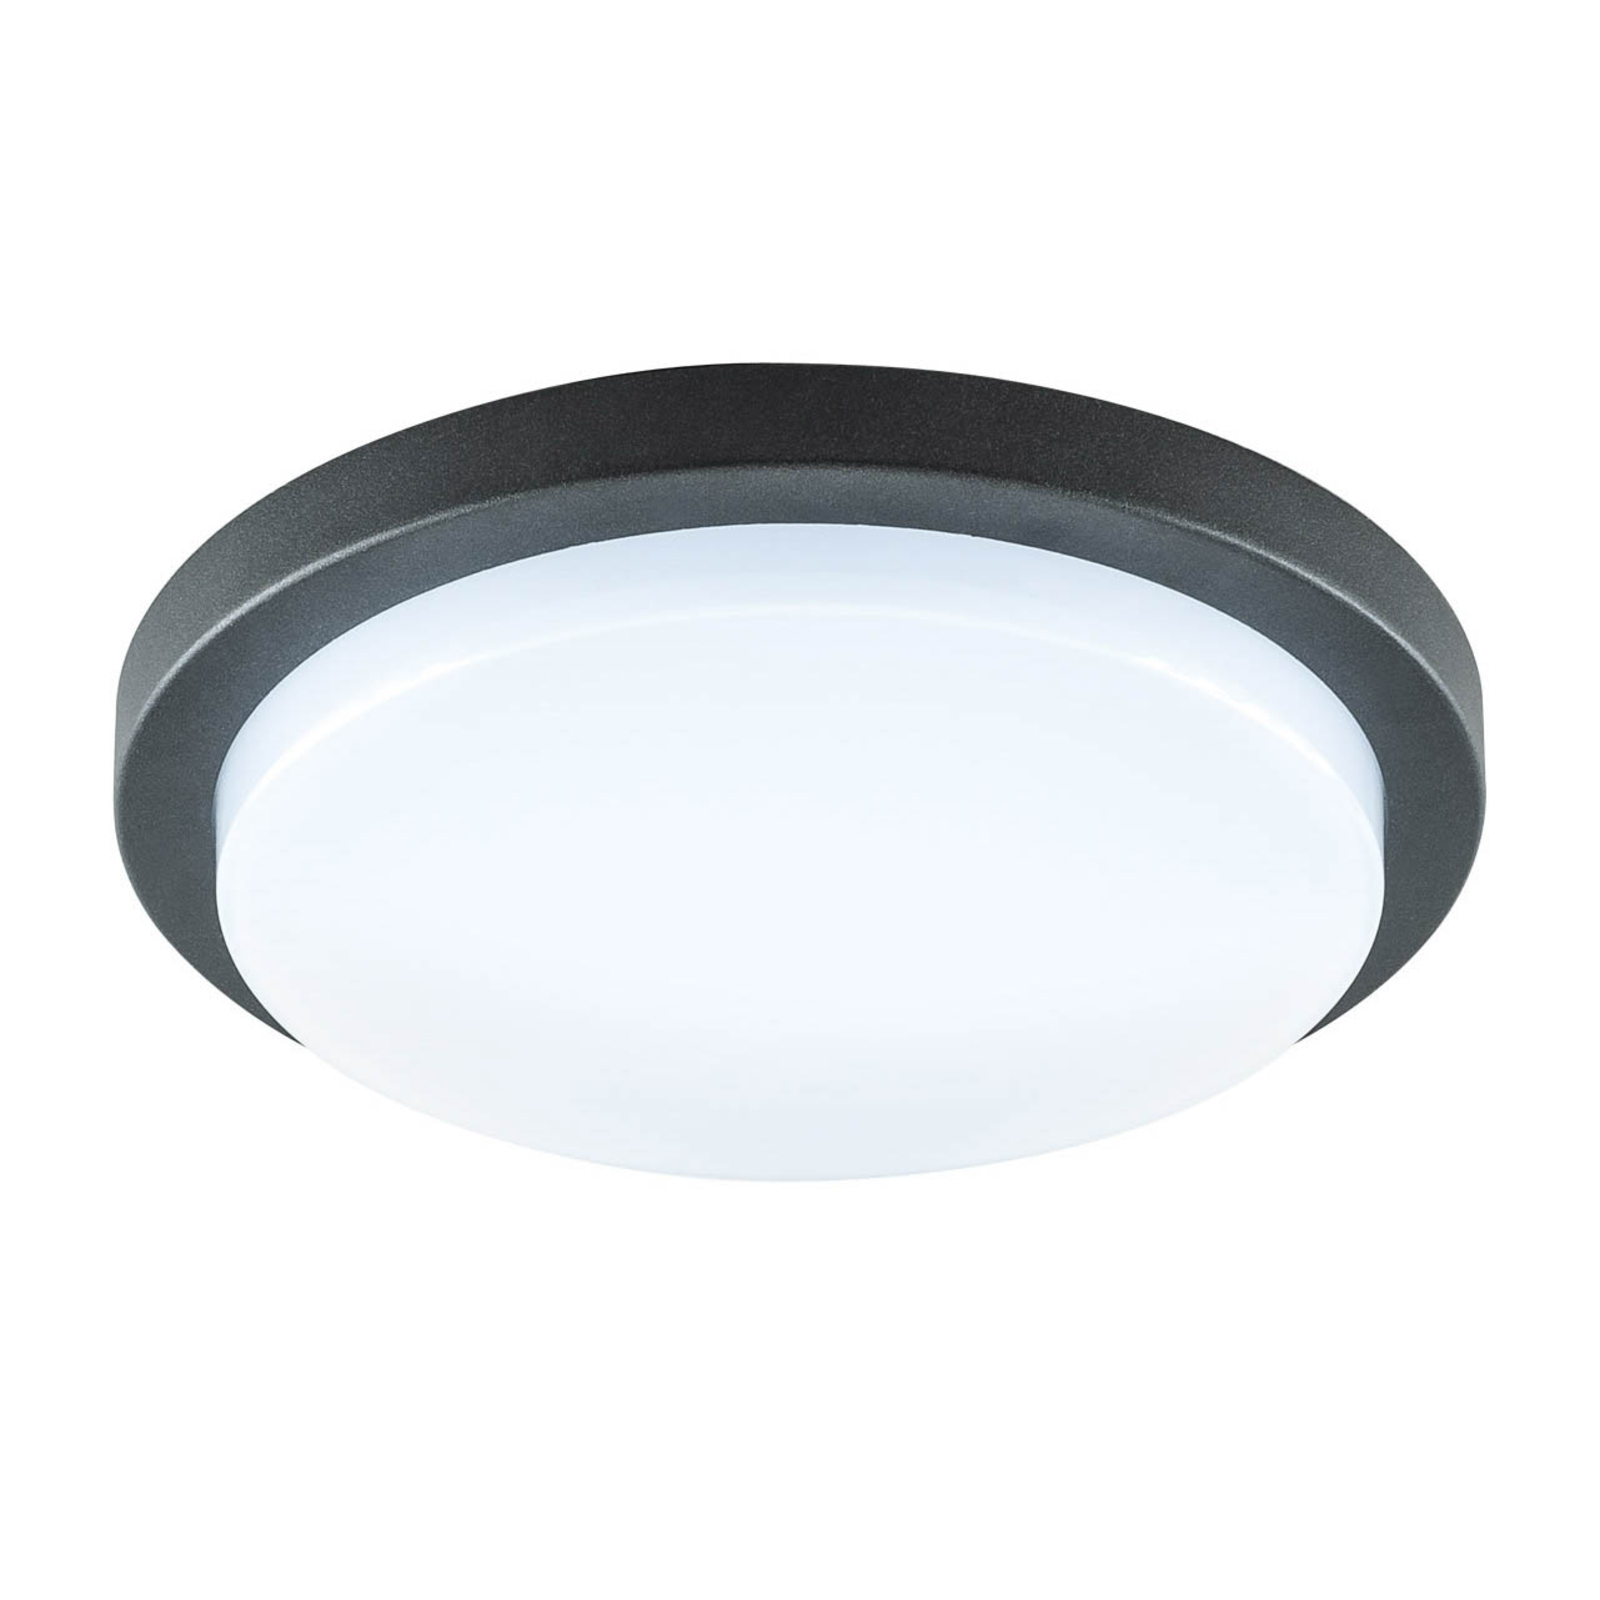 EVN Tectum LED utendørs taklampe, rund, Ø 24,6 cm